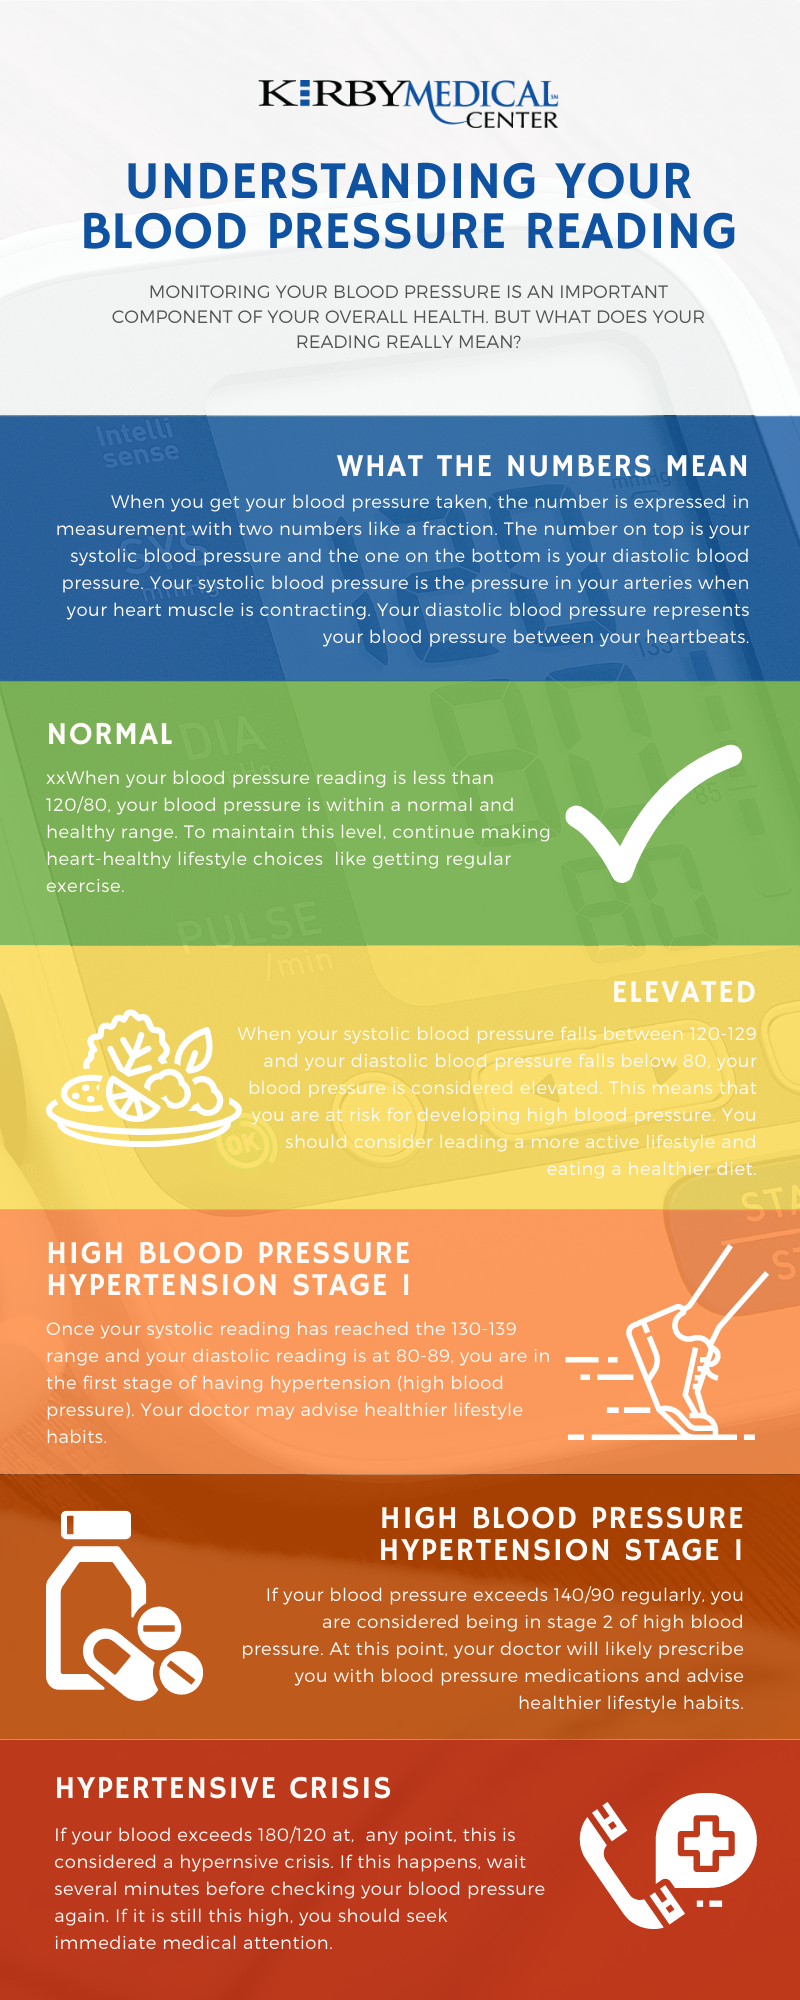 Understanding your blood pressure